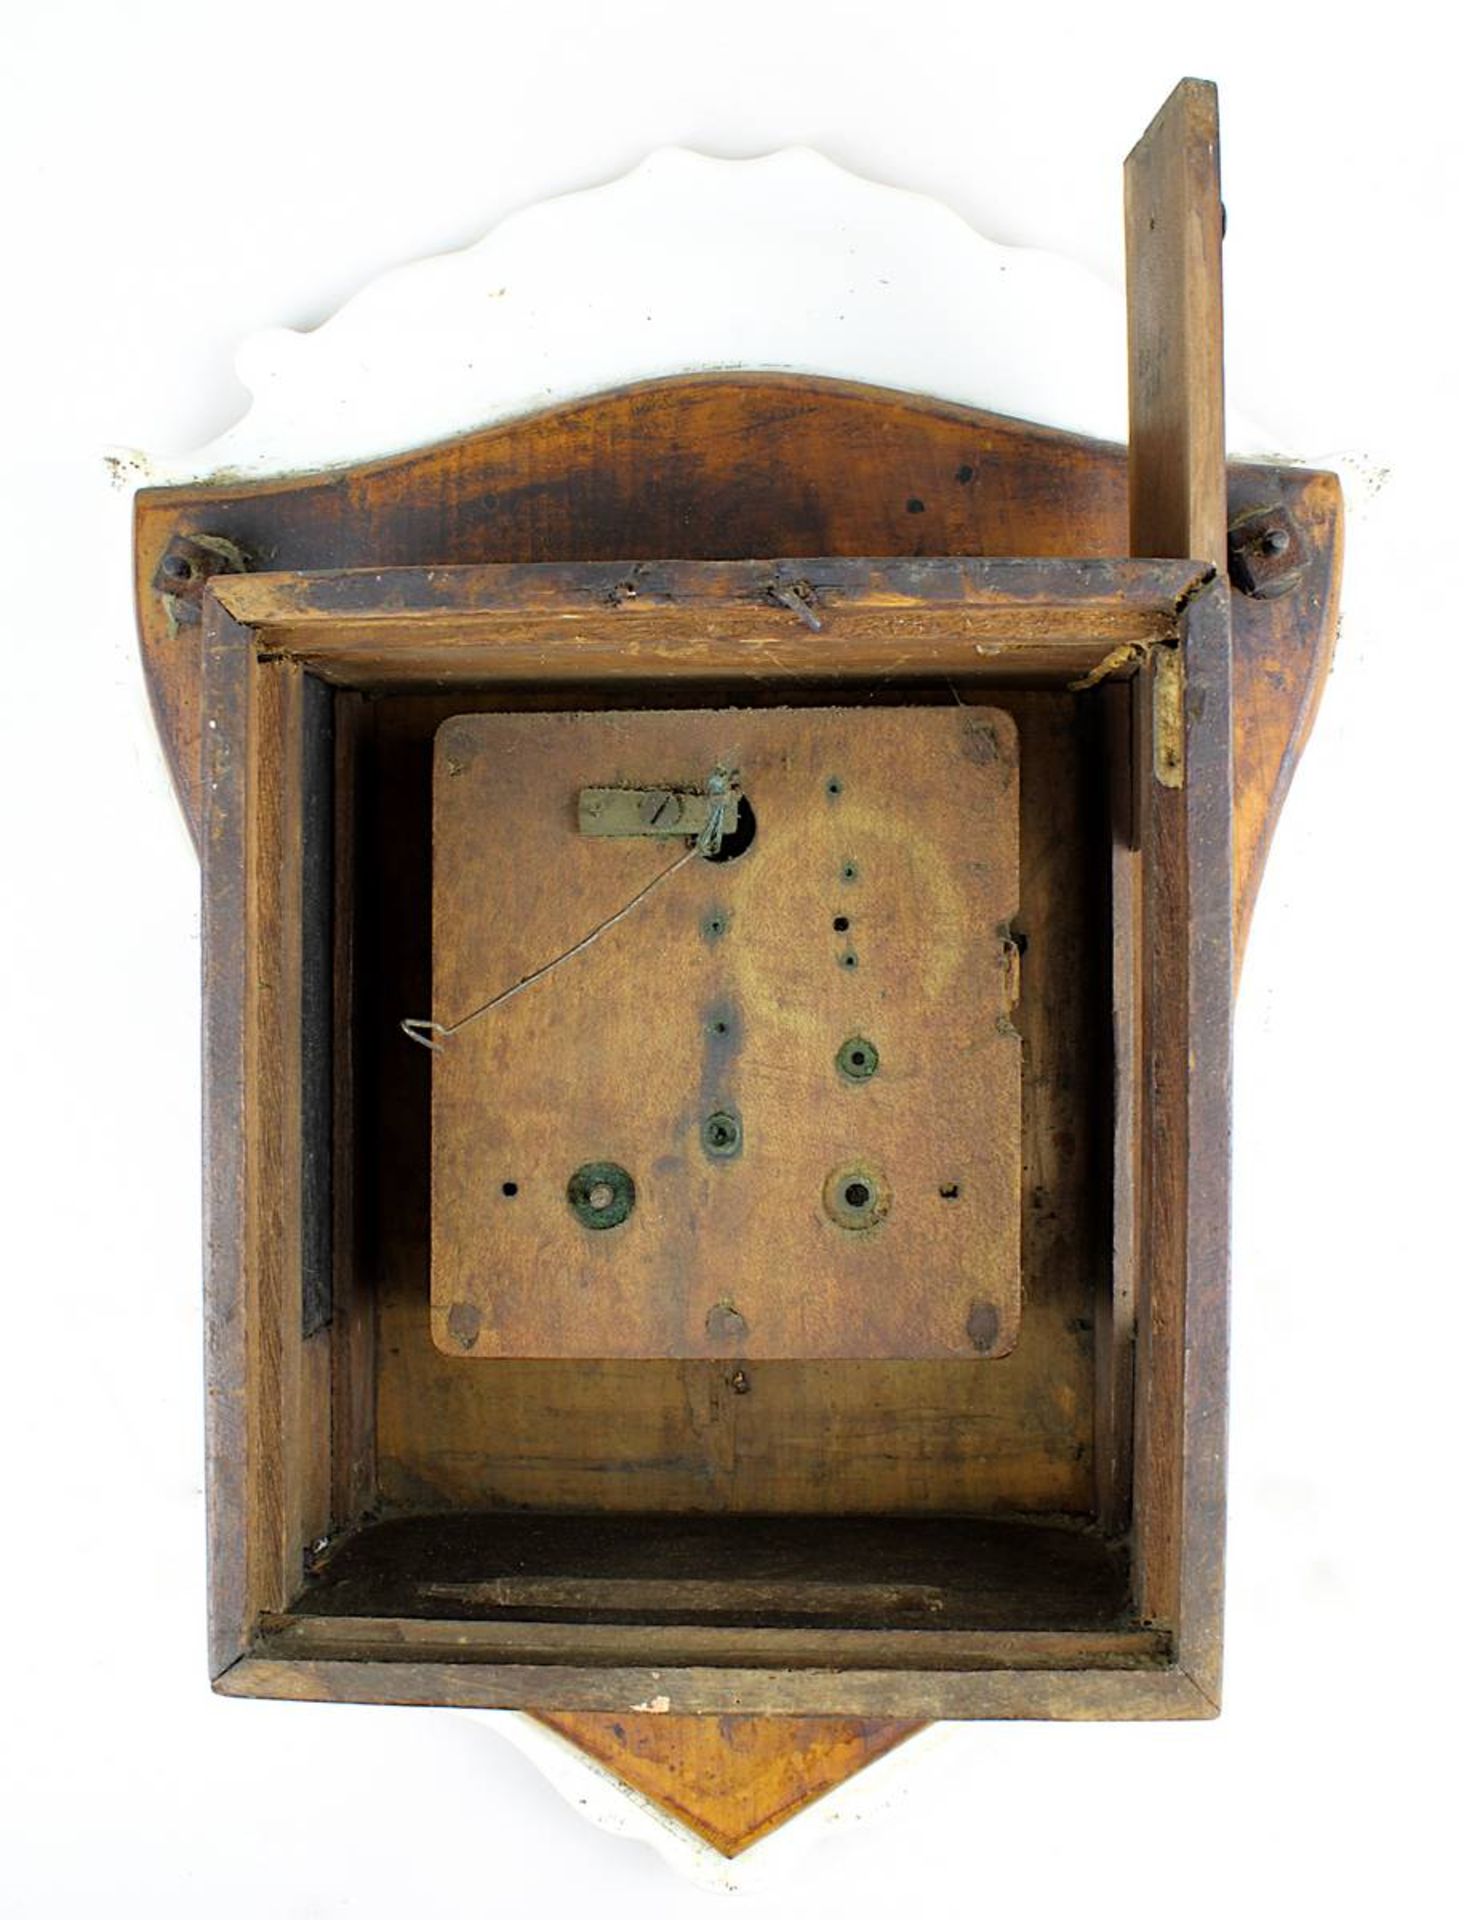 Porzellanschilduhr, 1. H. 19. Jh., handbemalte reliefierte Porzellanplatte, mit emailliertem - Bild 2 aus 2